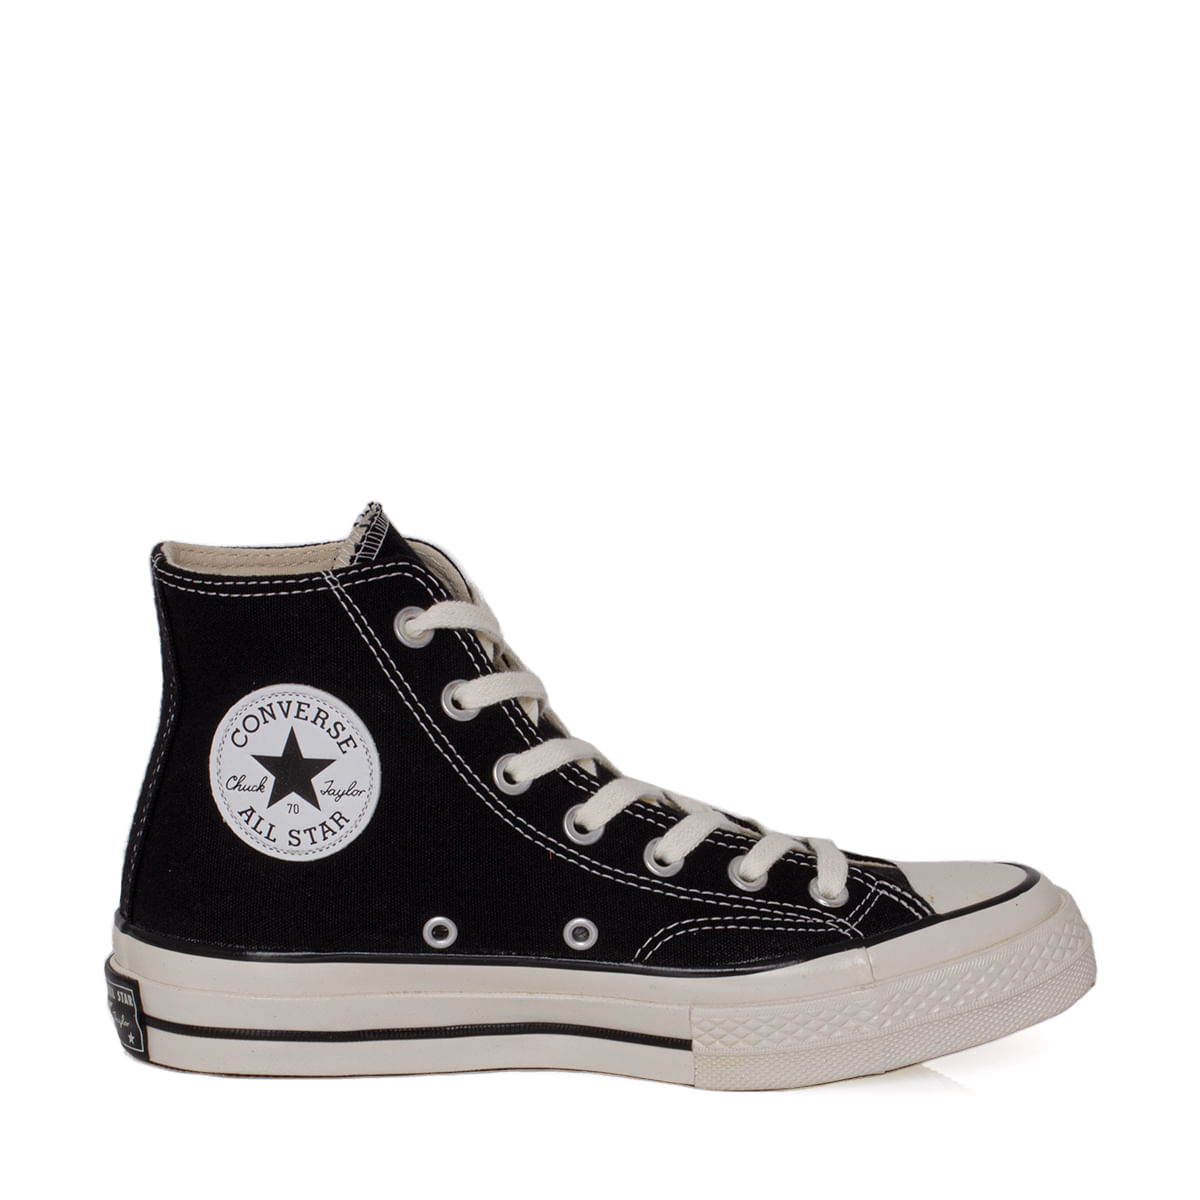 Tênis Converse All Star Preto/branco/preto - Frank Chaves Calçados